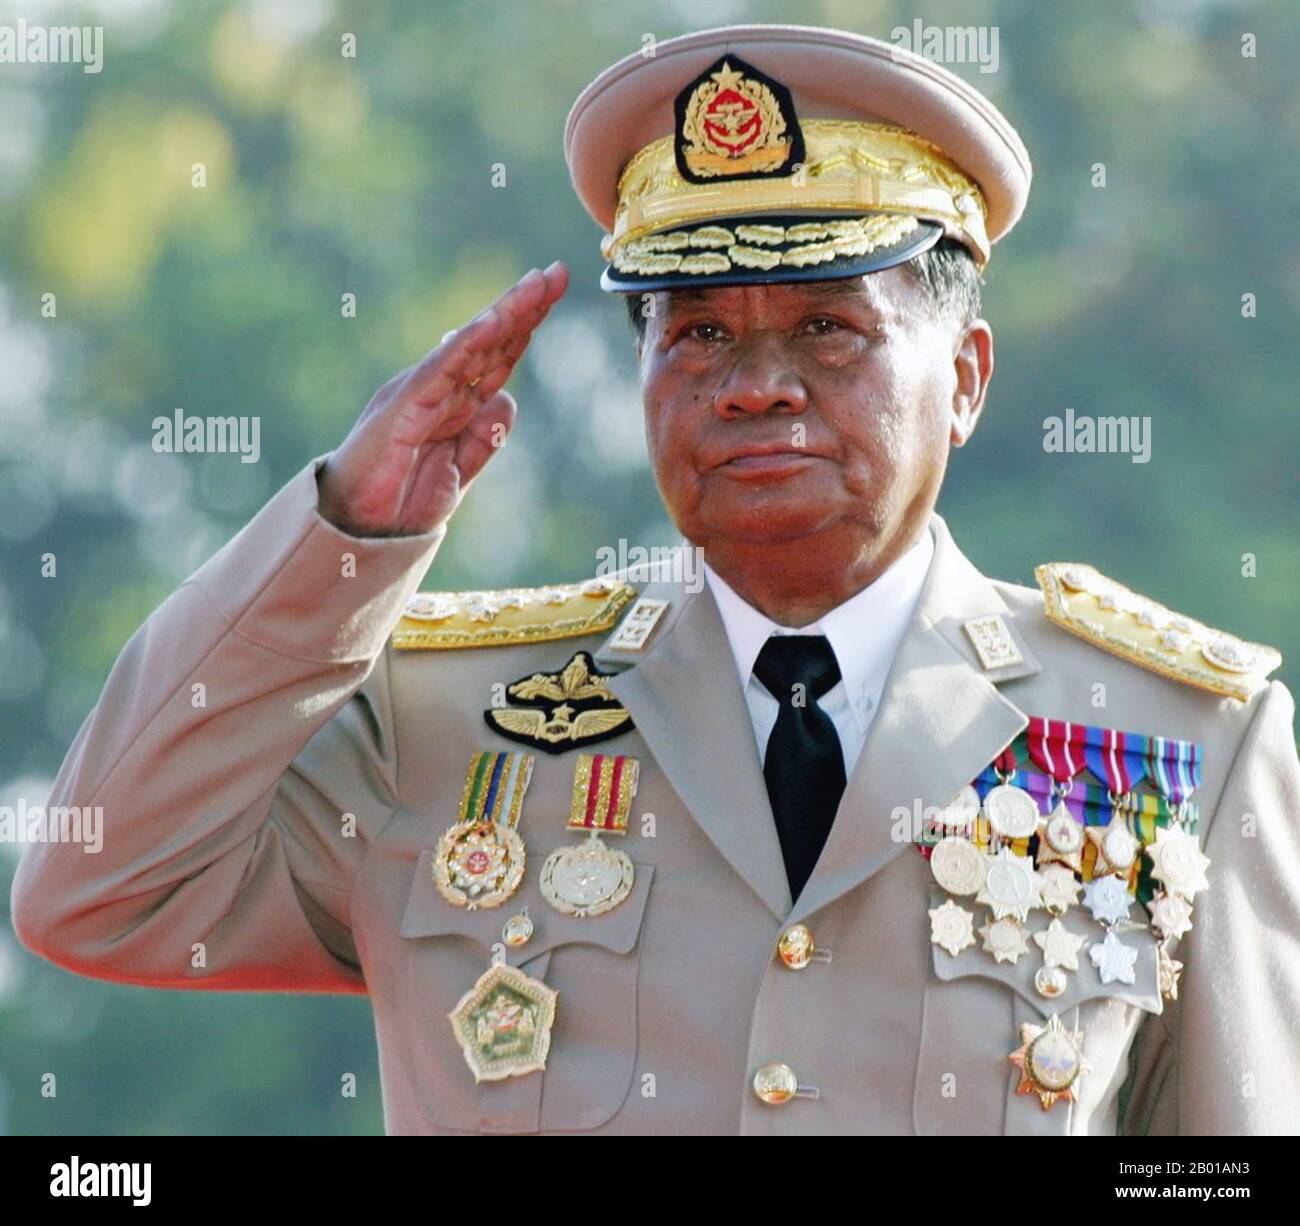 Birmanie/Myanmar: Than Shwe (3 février 1933- ), Président du Conseil national pour la paix et le développement du Myanmar, 1992-2011. Le général Than Shwe est un chef militaire et homme politique birman qui a été président du Conseil d'État pour la paix et le développement (SPDC) de 1992 à 2011. Au cours de cette période, il a occupé des postes clés au pouvoir, notamment le commandant en chef des forces armées du Myanmar (Tatmadaw) et le chef de l'Association de solidarité et de développement de l'Union. En 2011, il démissionne officiellement de son poste de chef d'État, en faveur de son successeur désigné à la main, Thein sein. Banque D'Images